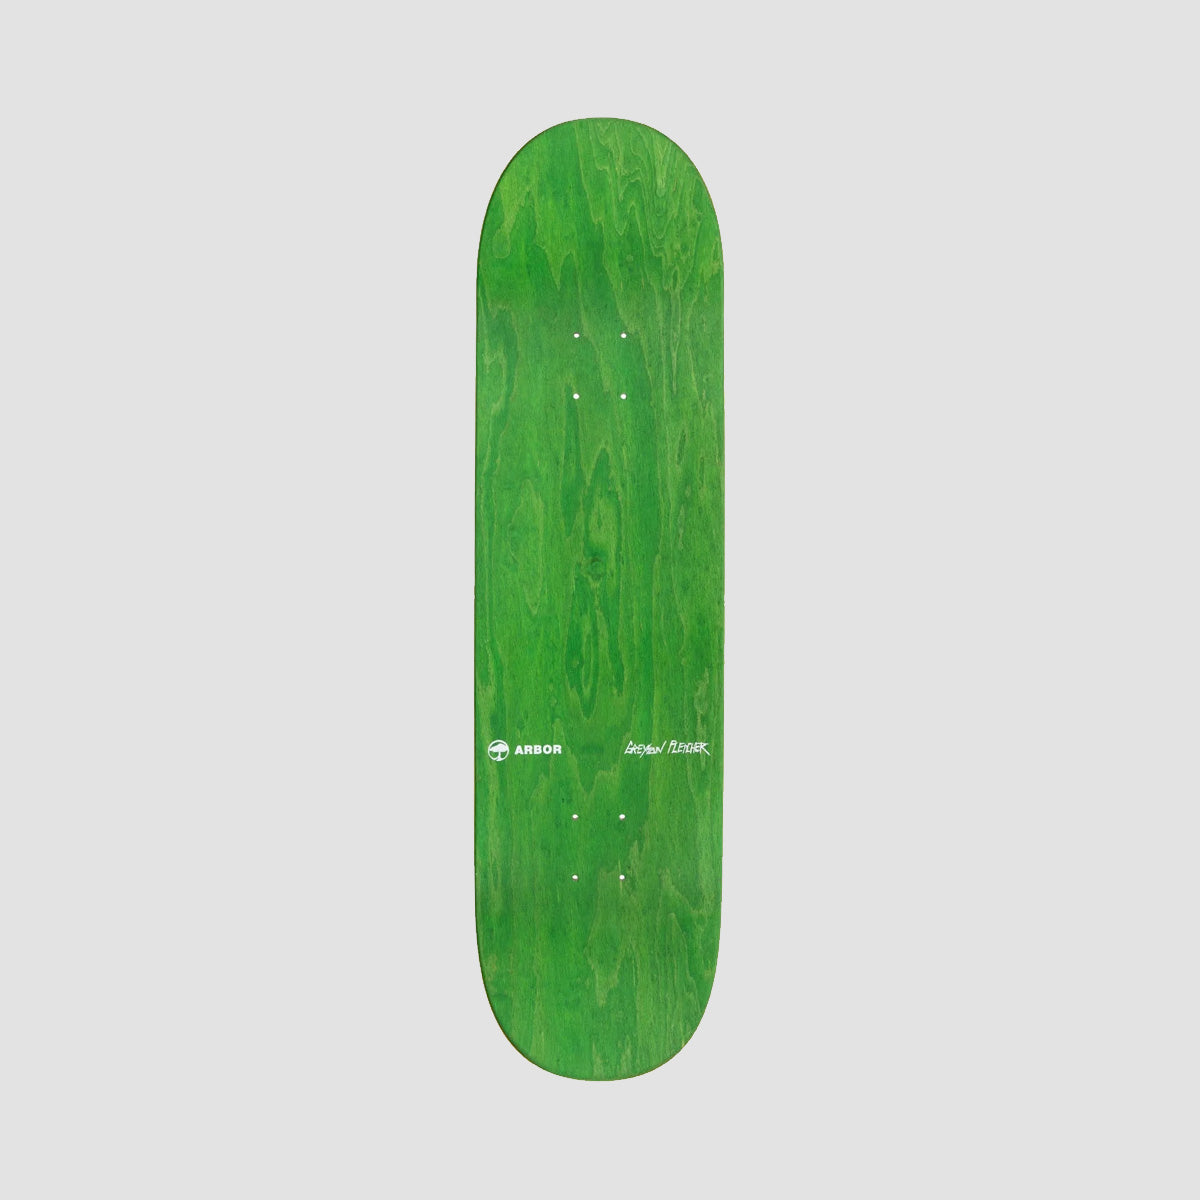 Arbor Greyson Faces Skateboard Deck - 8.625"